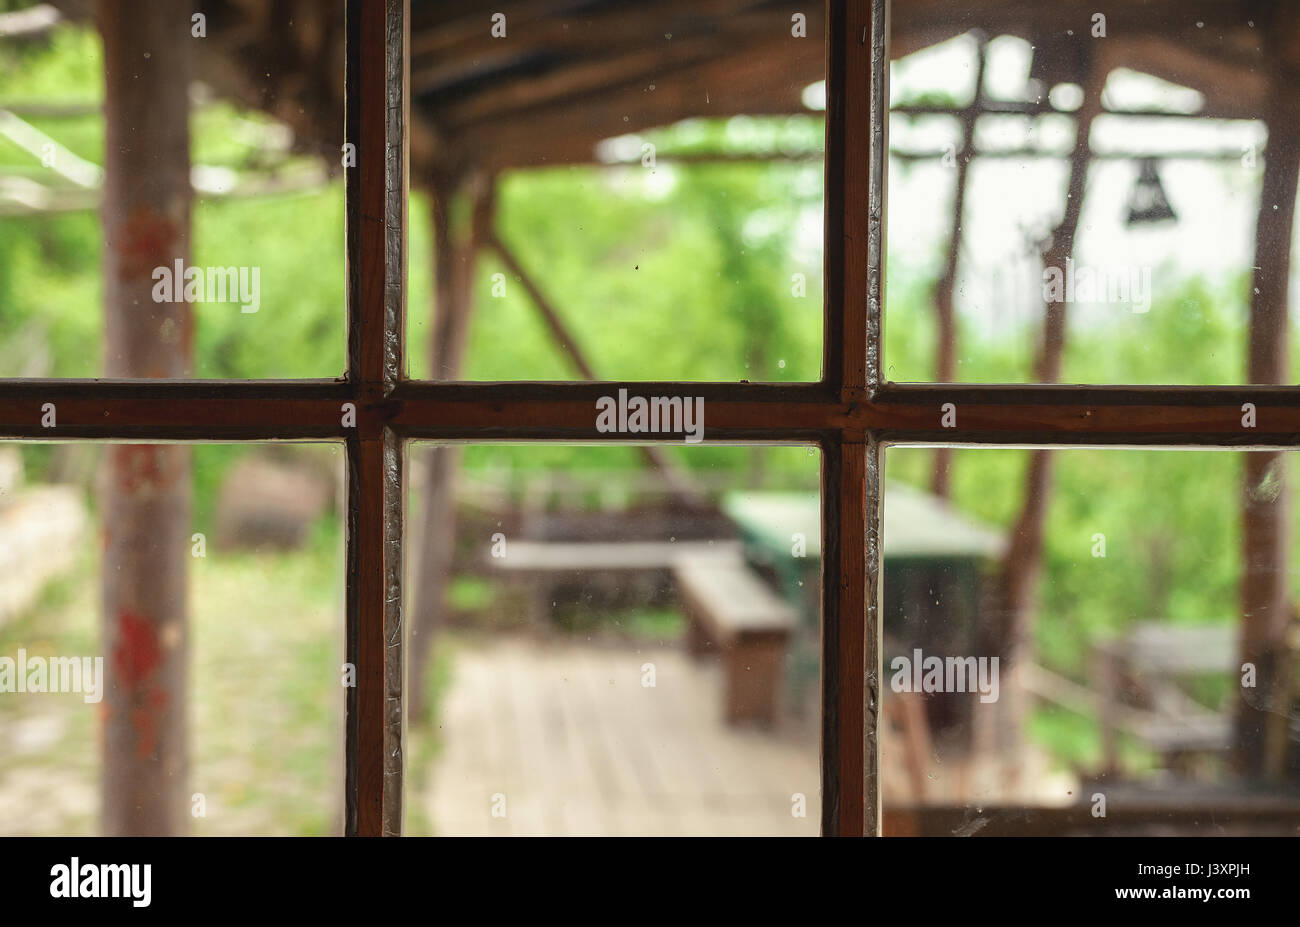 Acercamiento por parte de una vieja ventana retro, bastidor de madera y detalles de cristal sucio. Foto de stock